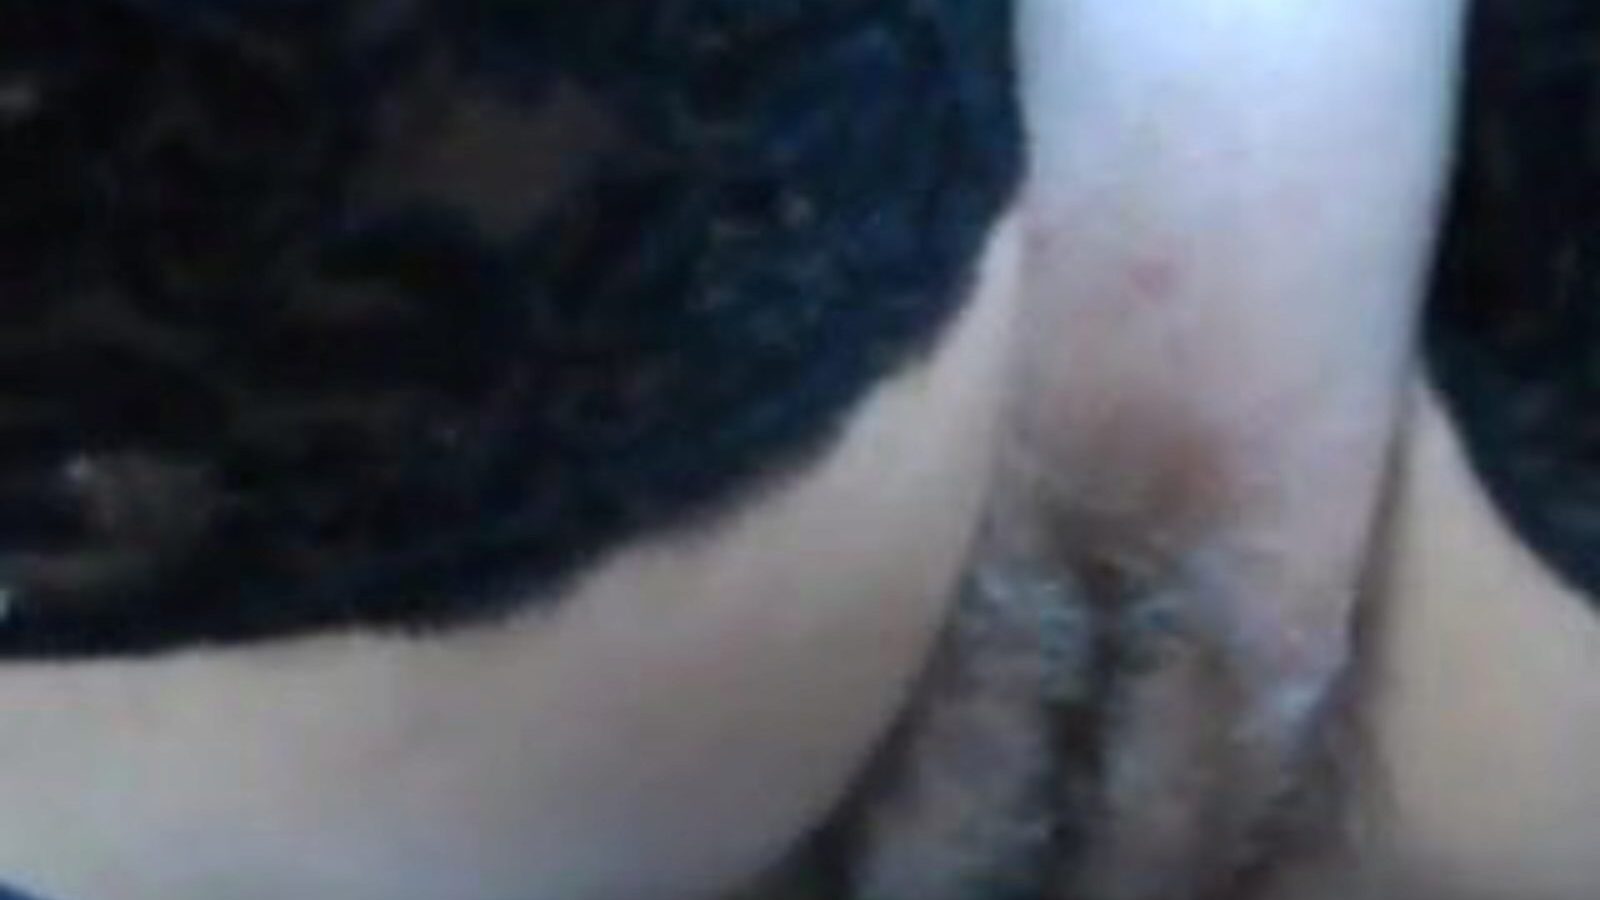 faen og vis: hårete fitte faen pornovideo b9 - xhamster se faen og vis tube elskovsvideo gratis for alle på xhamster, med den autoritative samlingen av hårete fitte faen fri og xxx & faen viser pornosekvenssekvenser